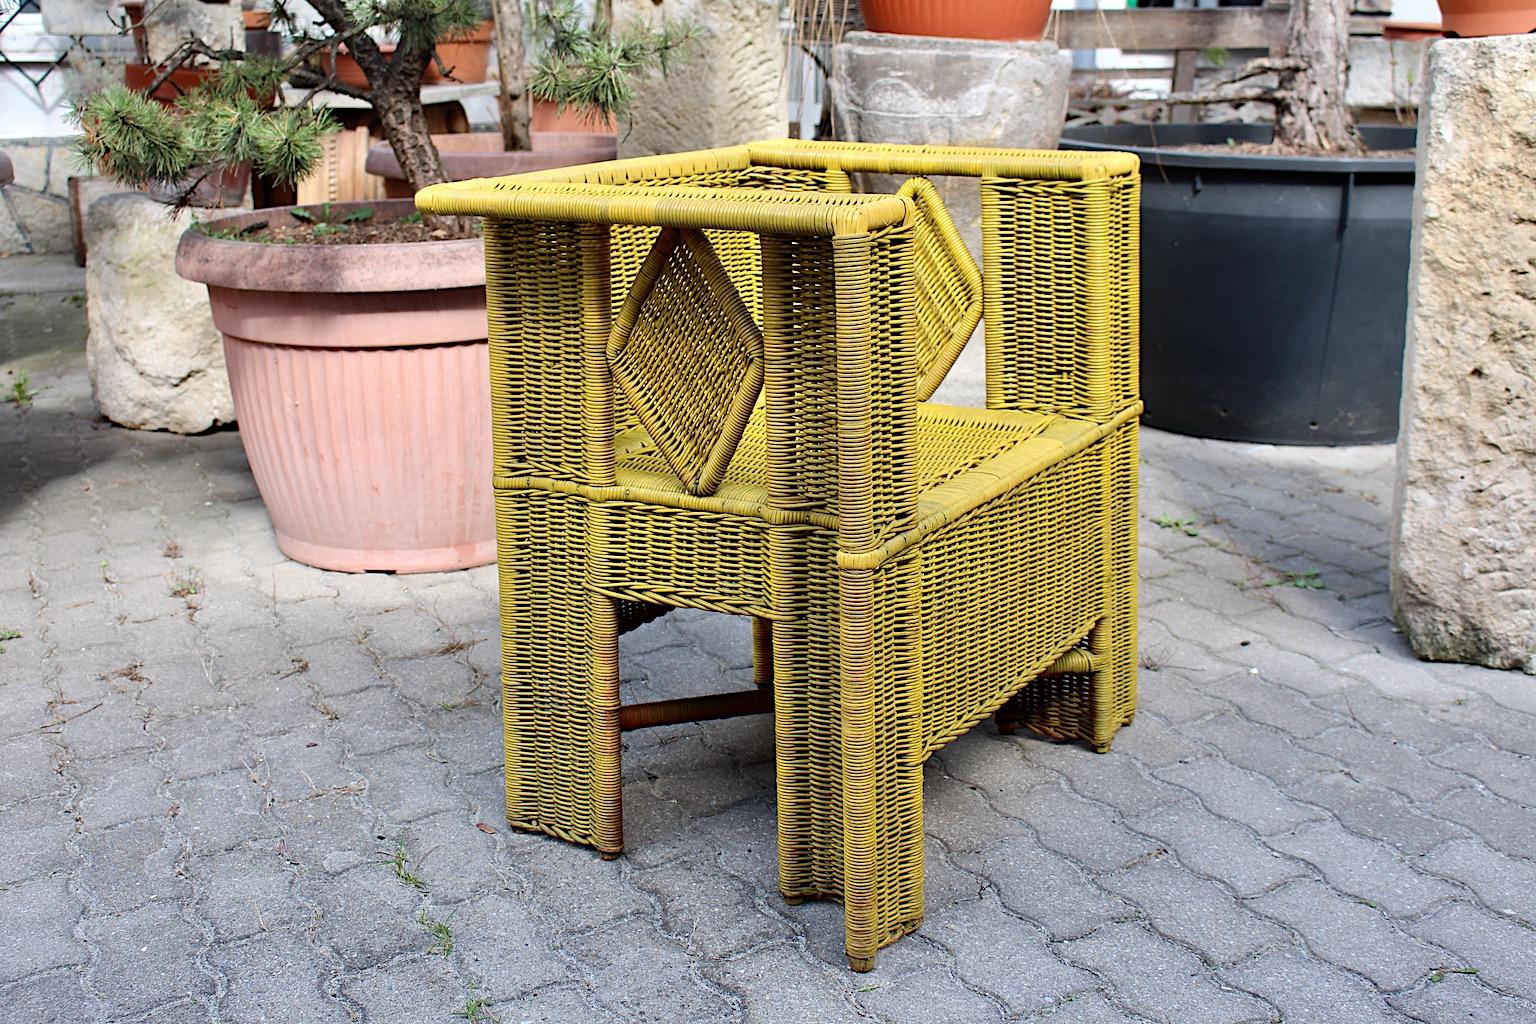 Fauteuil de patio vintage jaune en rotin de style Jugendstil Secession conçu dans le cercle de Josef Hoffmann attribué à 
Prag - Rudniker Korbwaren - Fabrikant et fabriqué vers 1908 Vienne.
La belle forme carrée cubique avec un motif rhombique de